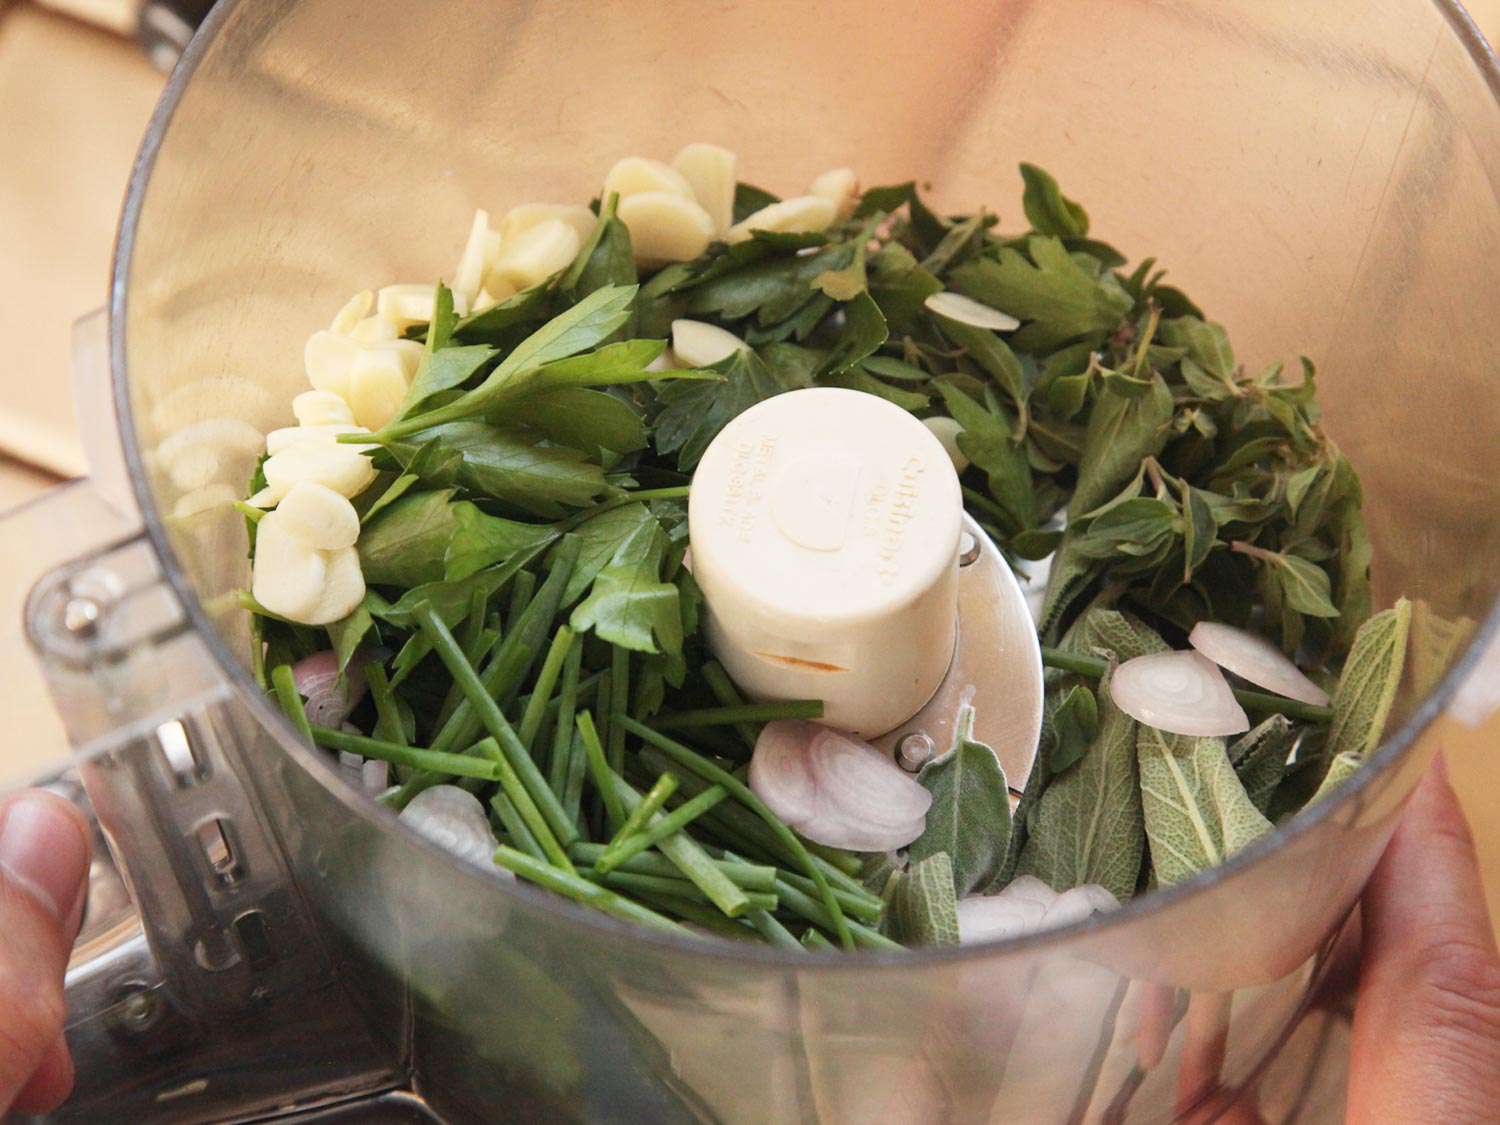 装满未切碎的绿色香草、青葱和蒜瓣的食品加工机。